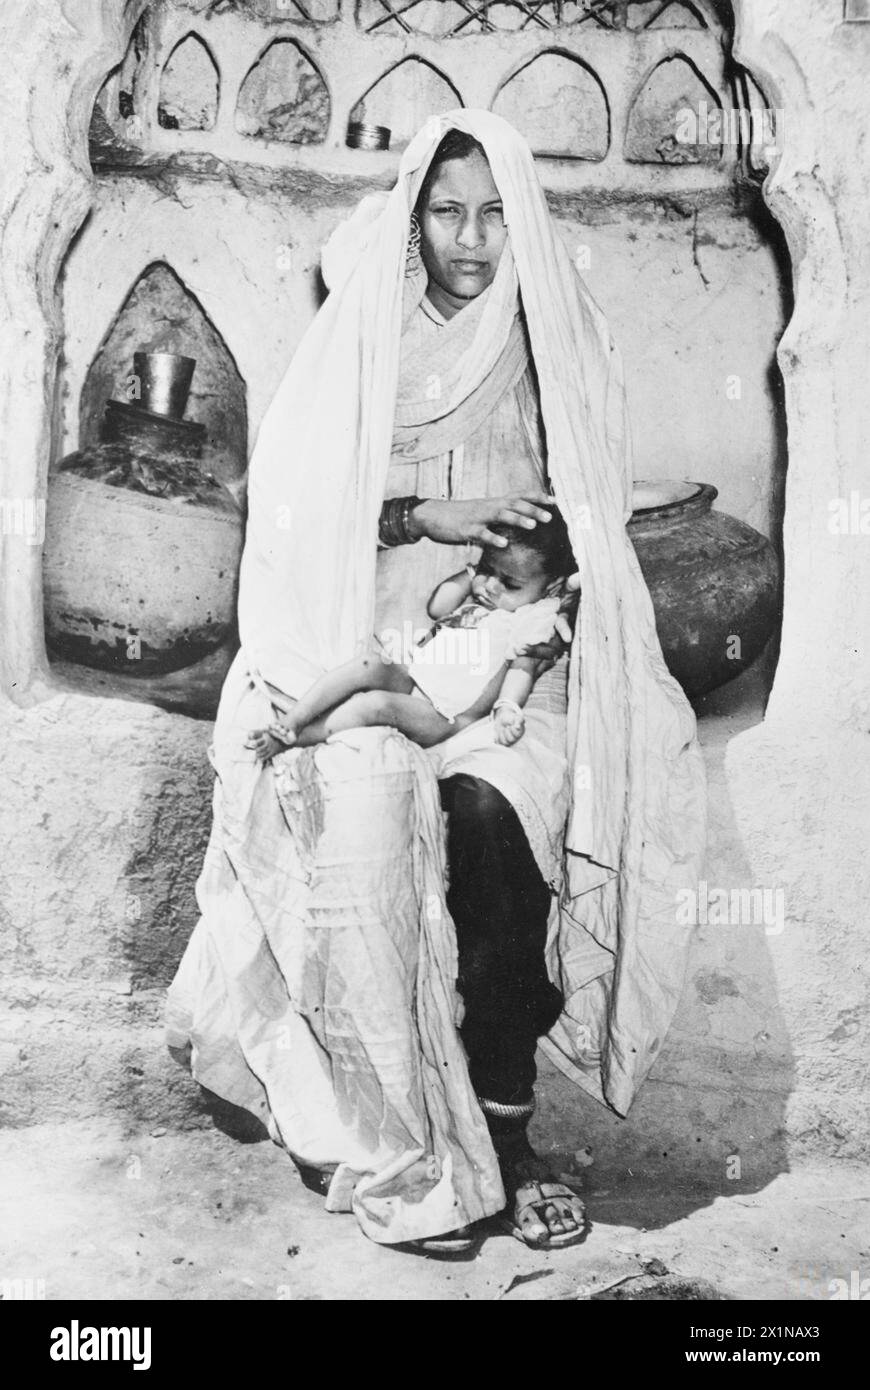 GAGNANTS DU VICTORIA CROSS : 1939-1945. - Jugri Begum, veuve de Jemander Abdul Hafiz V.C. du 9e régiment Jat, avec sa fille de trois mois. Abdul Hafiz n'a jamais vu le bébé, Banque D'Images